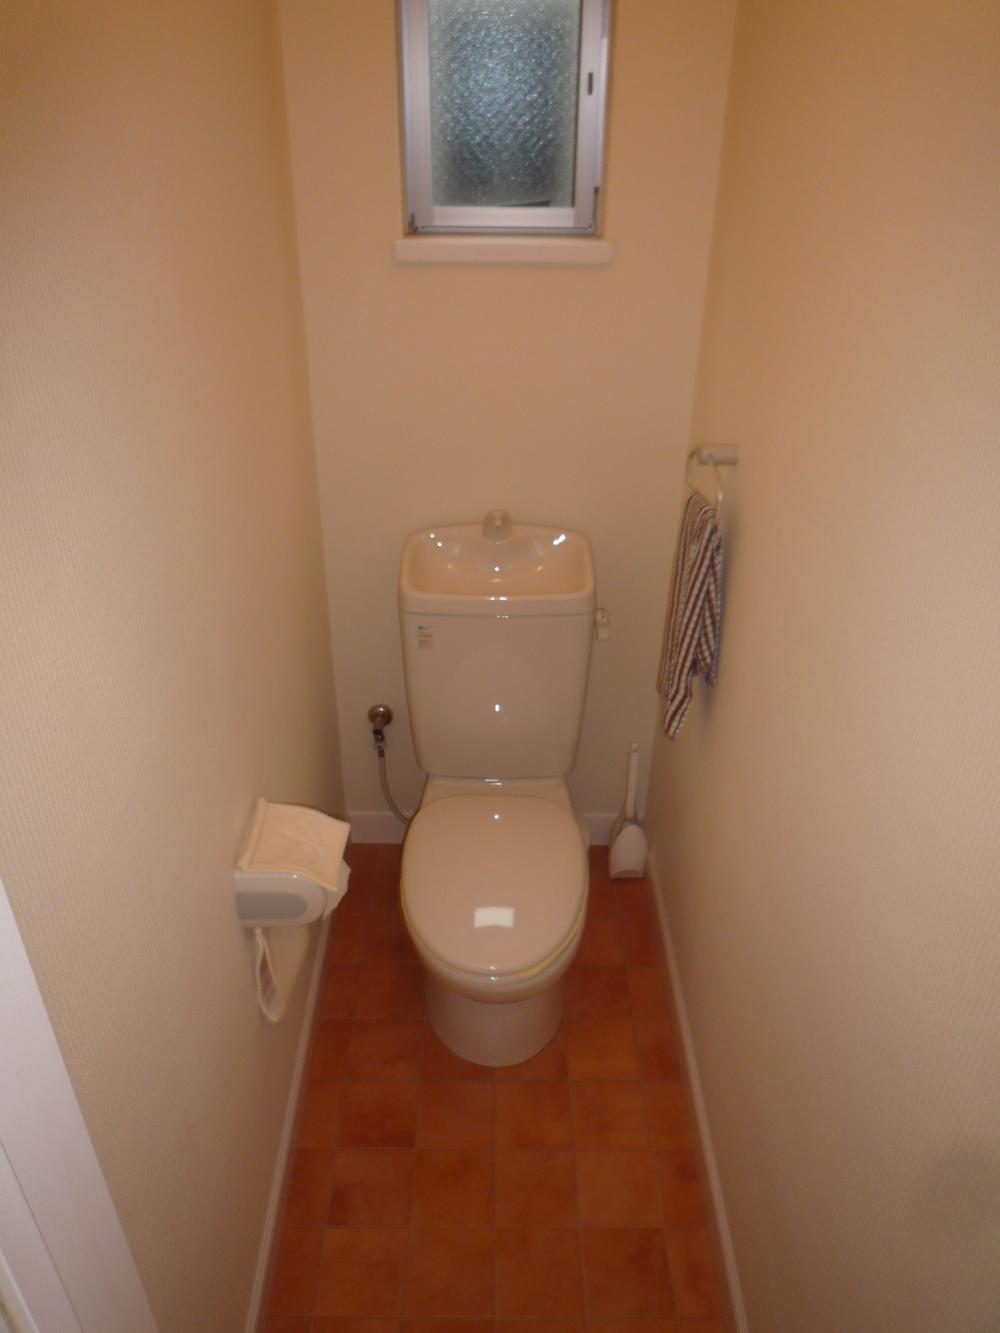 Toilet. Cute tile floor! ! 